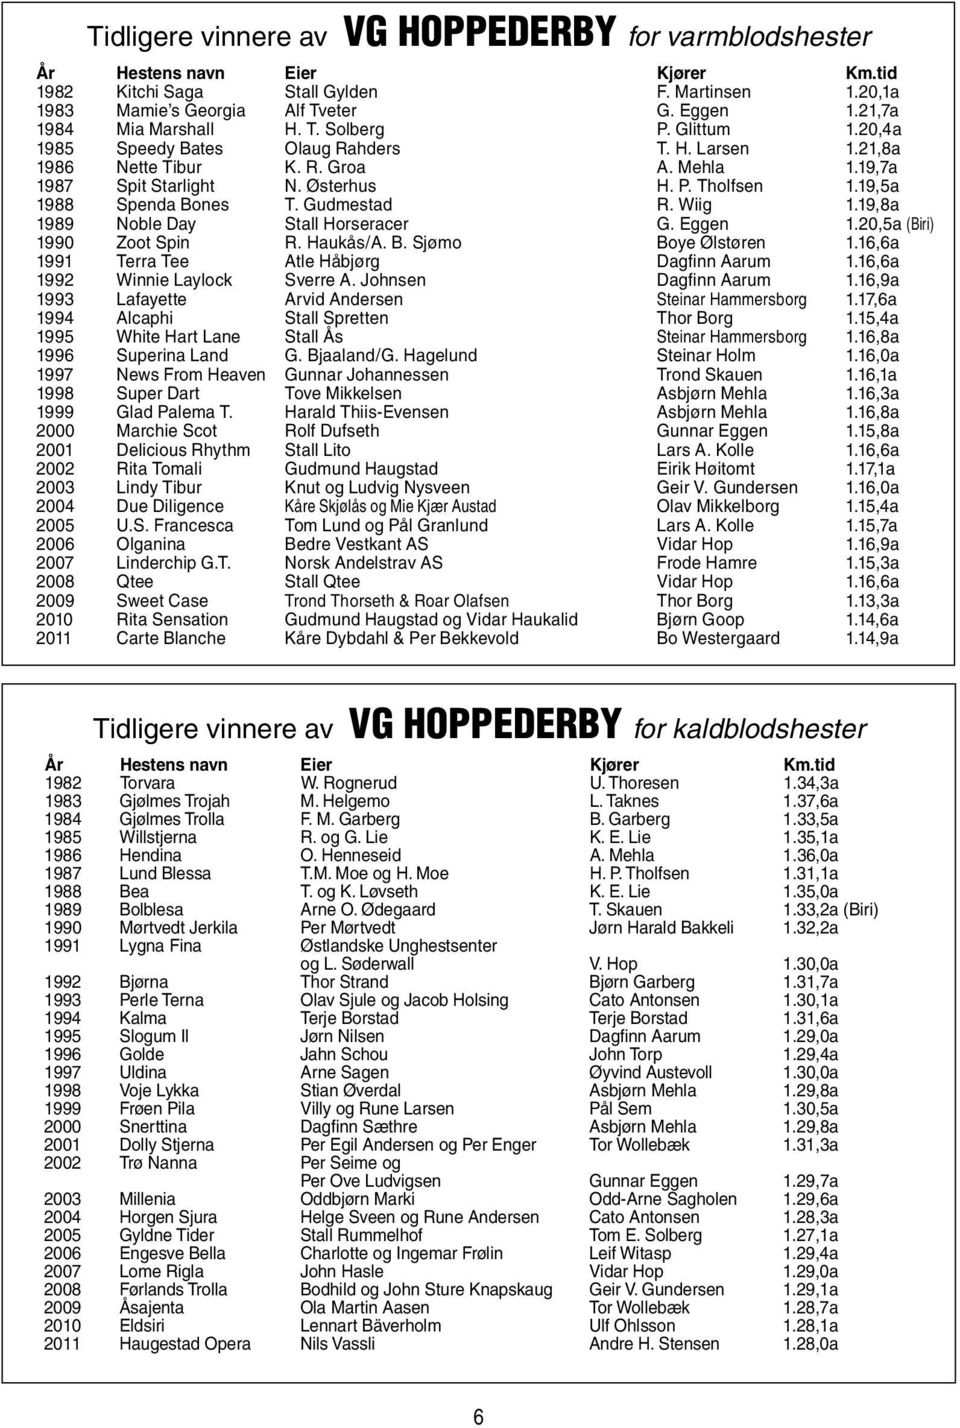 19,5a 1988 Spenda Bones T. Gudmestad R. Wiig 1.19,8a 1989 Noble Day Stall Horseracer G. Eggen 1.20,5a (Biri) 1990 Zoot Spin R. Haukås/A. B. Sjømo Boye Ølstøren 1.